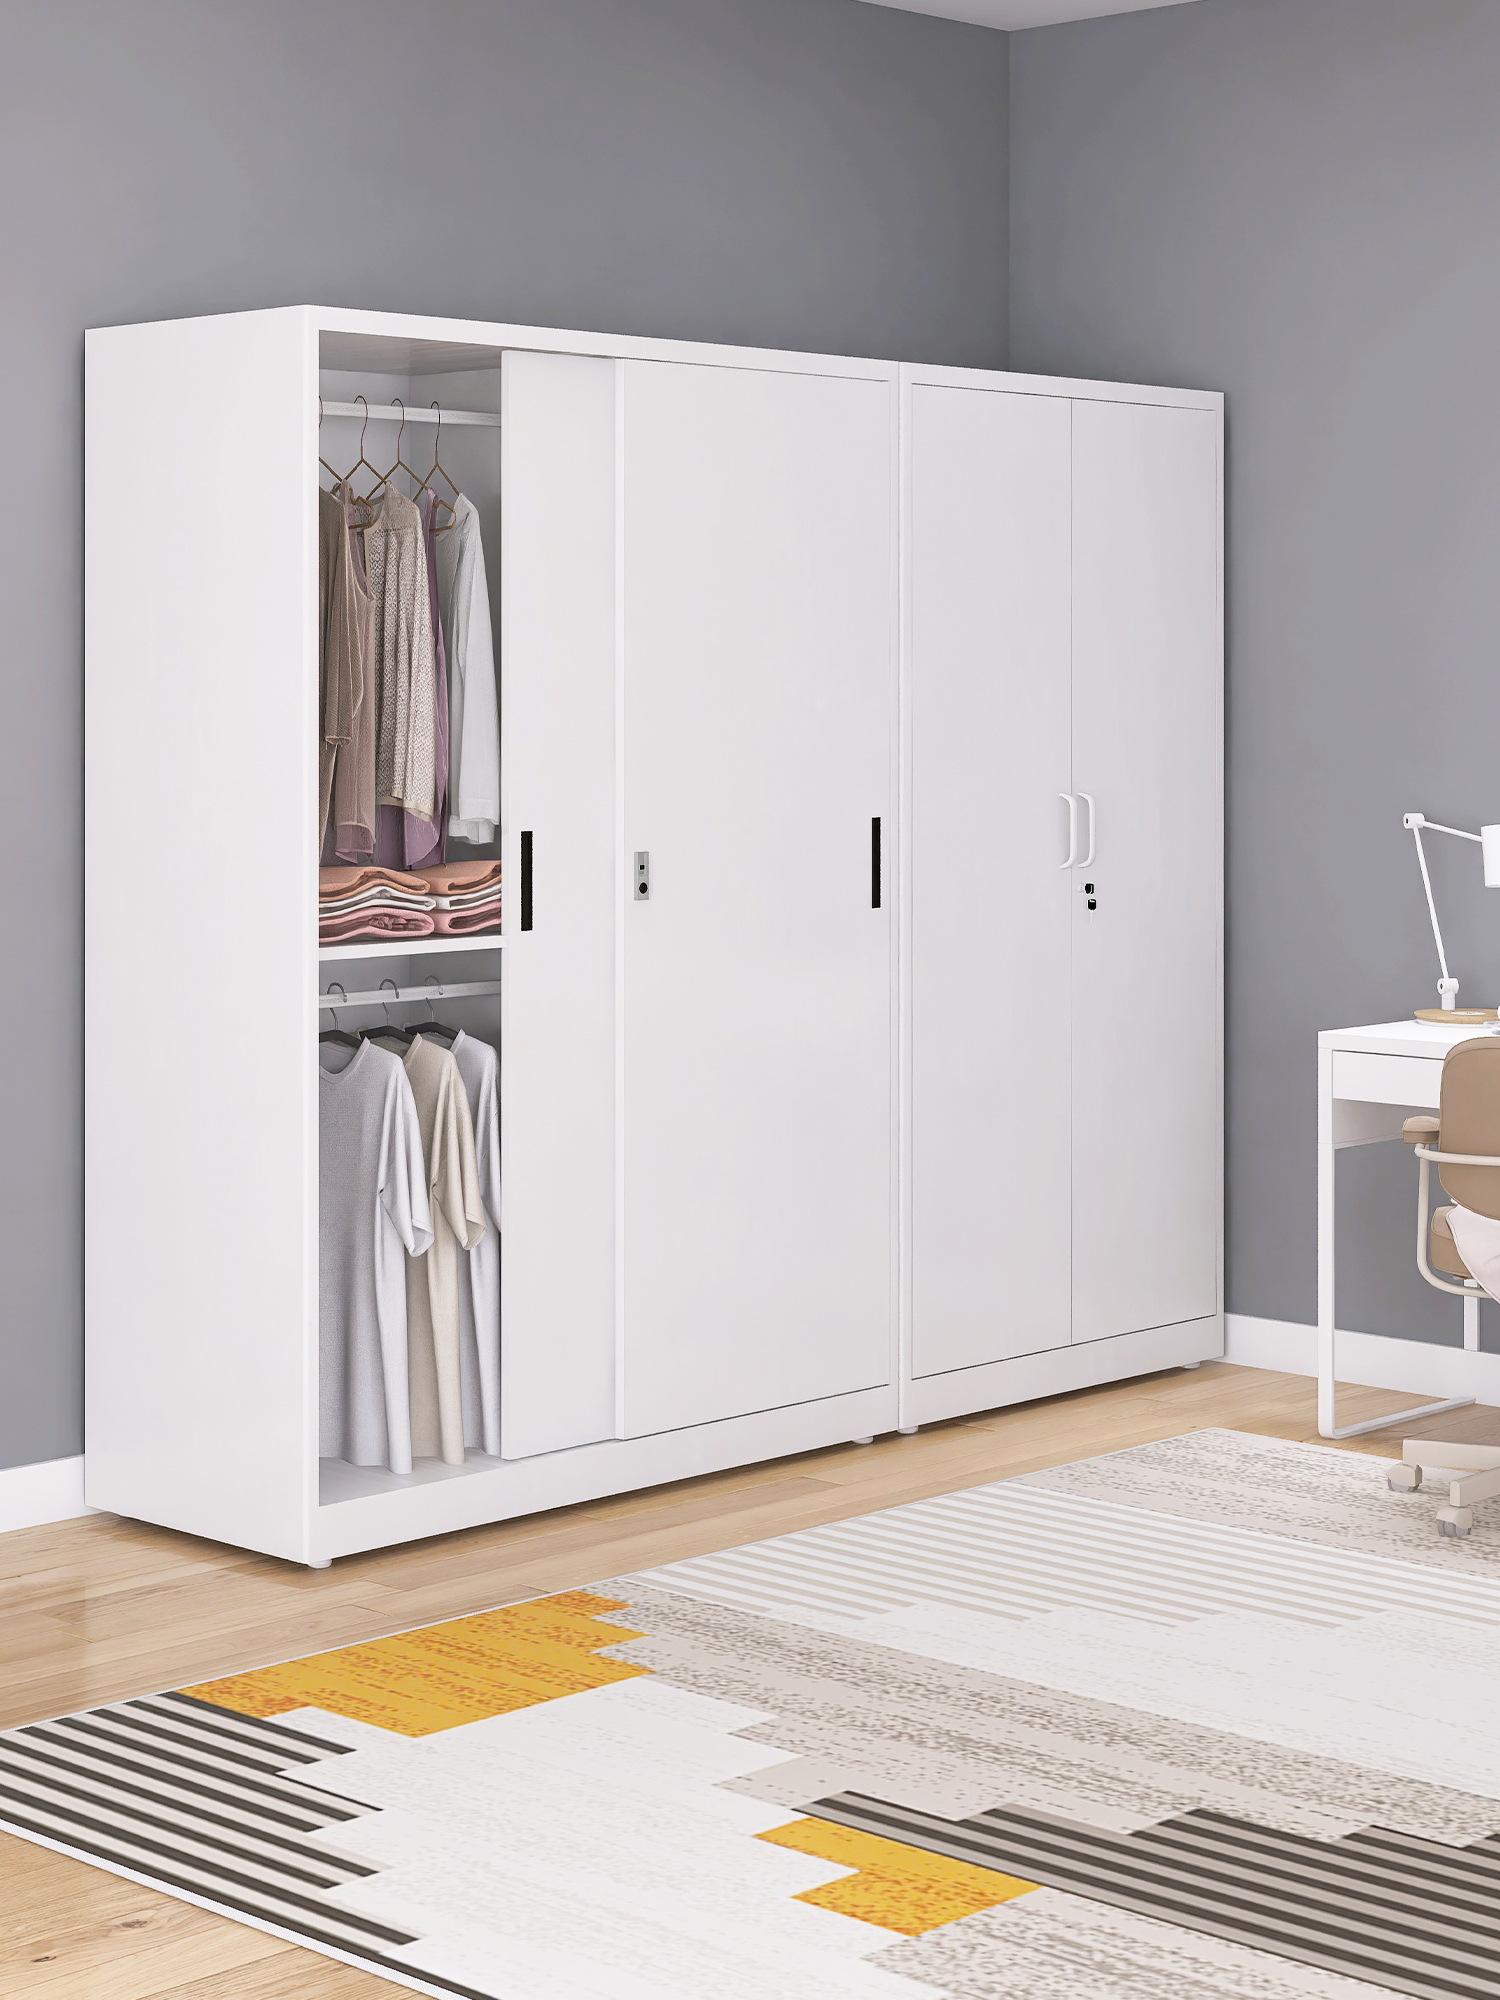 現代簡約防雨防曬儲物衣櫃 2米高單雙門臥室陽臺櫃門數量可選